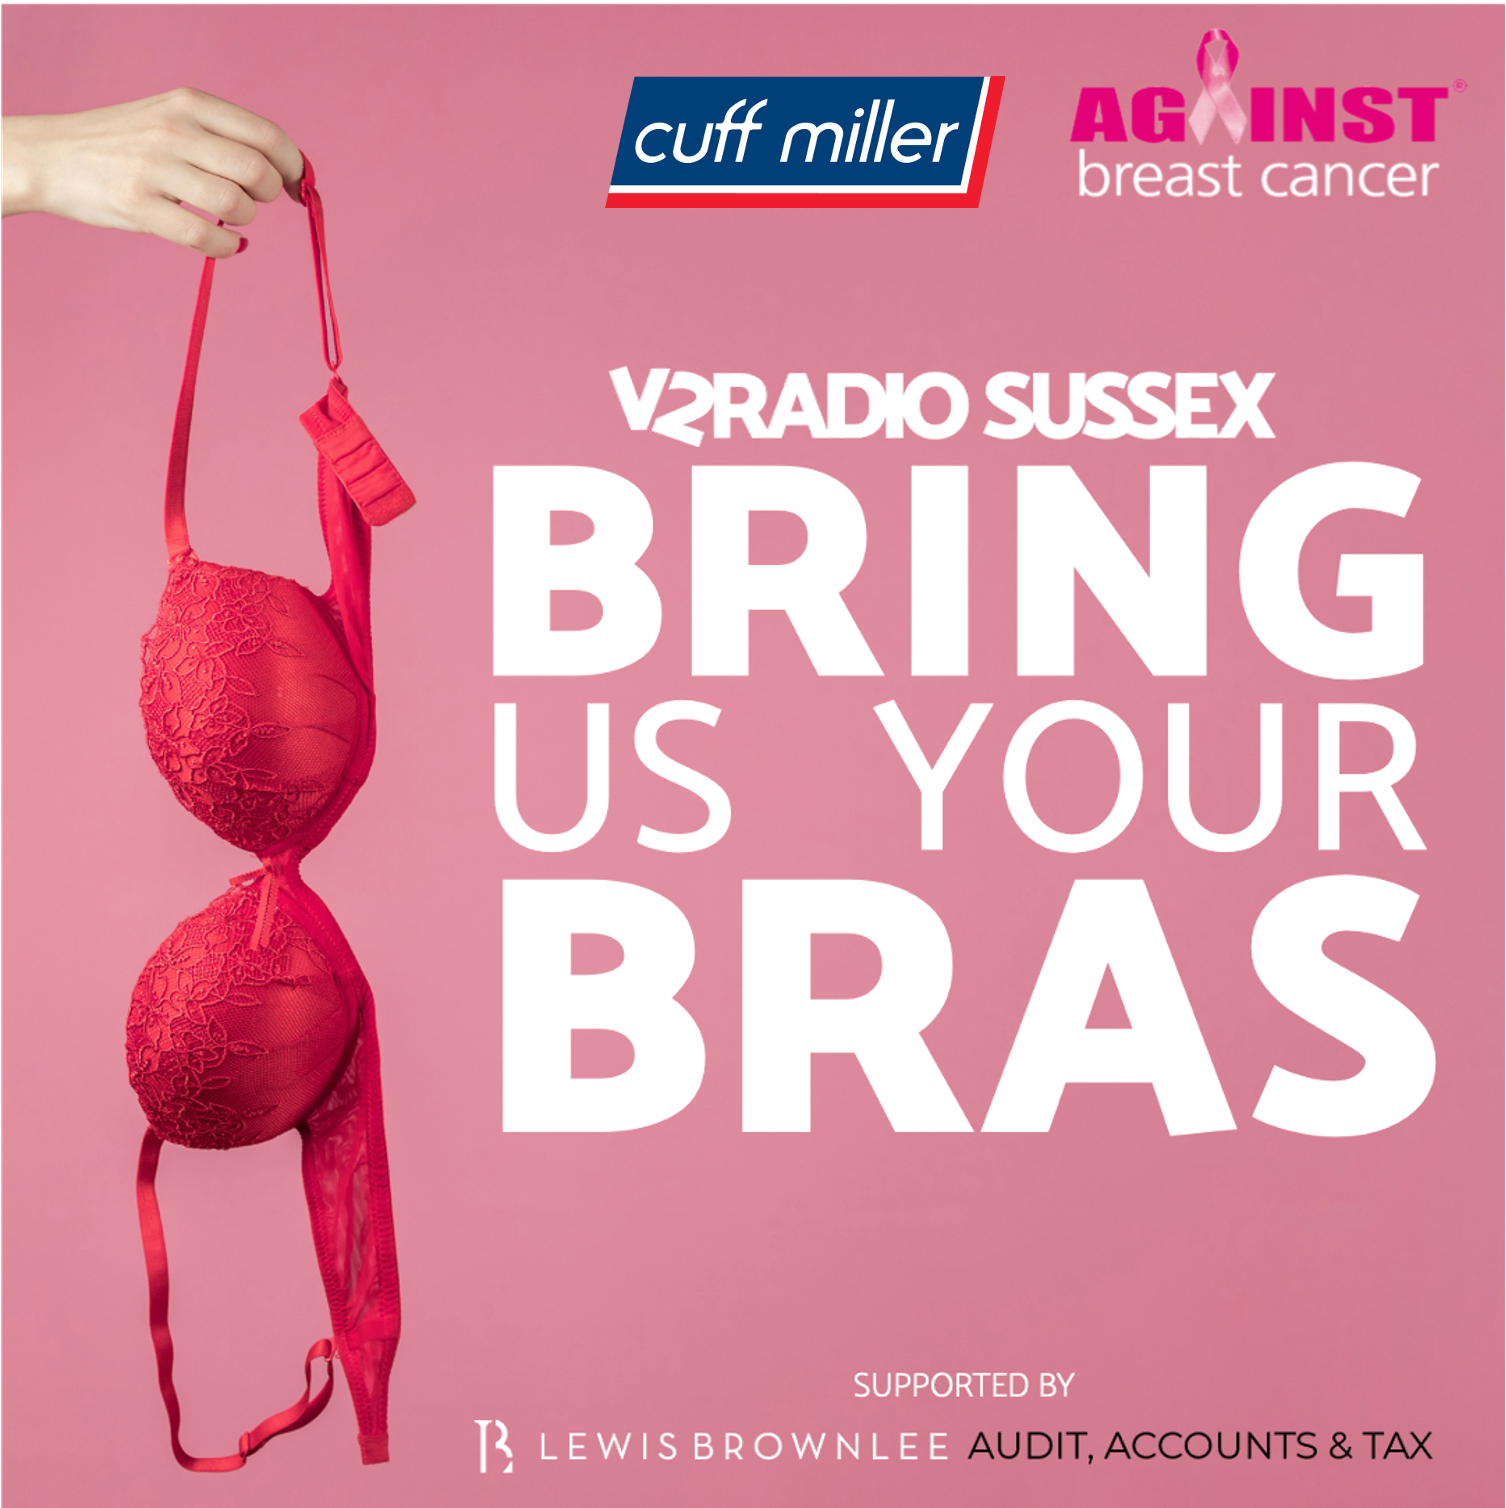 Bring Cuffs your bras! - Help us fight breast cancer! - Cuff Miller,  Littlehampton, West Sussex